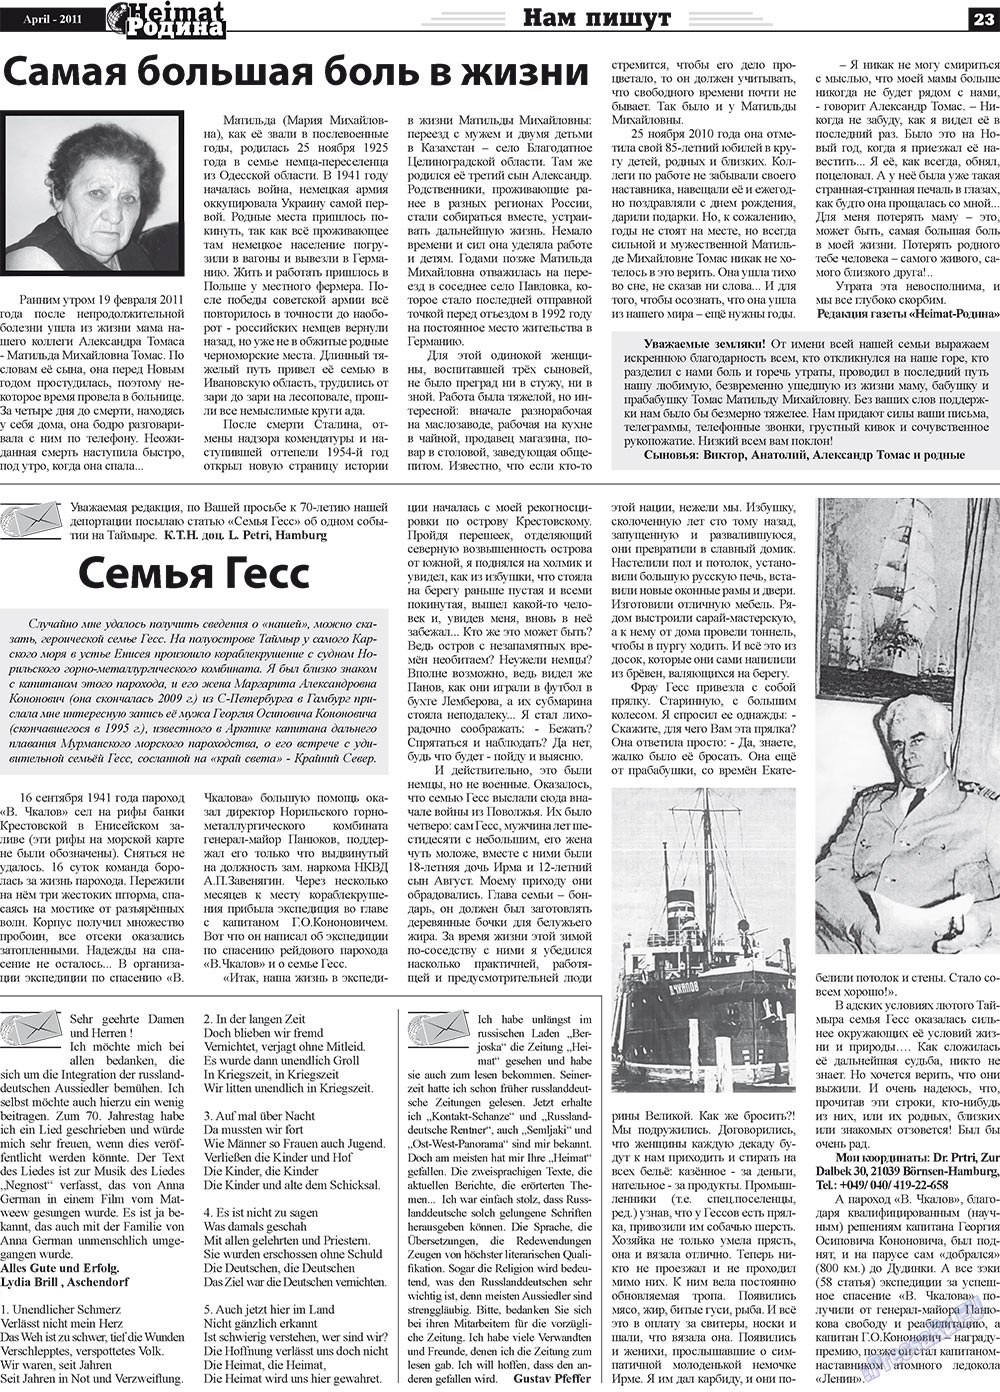 Heimat-Родина (газета). 2011 год, номер 4, стр. 23